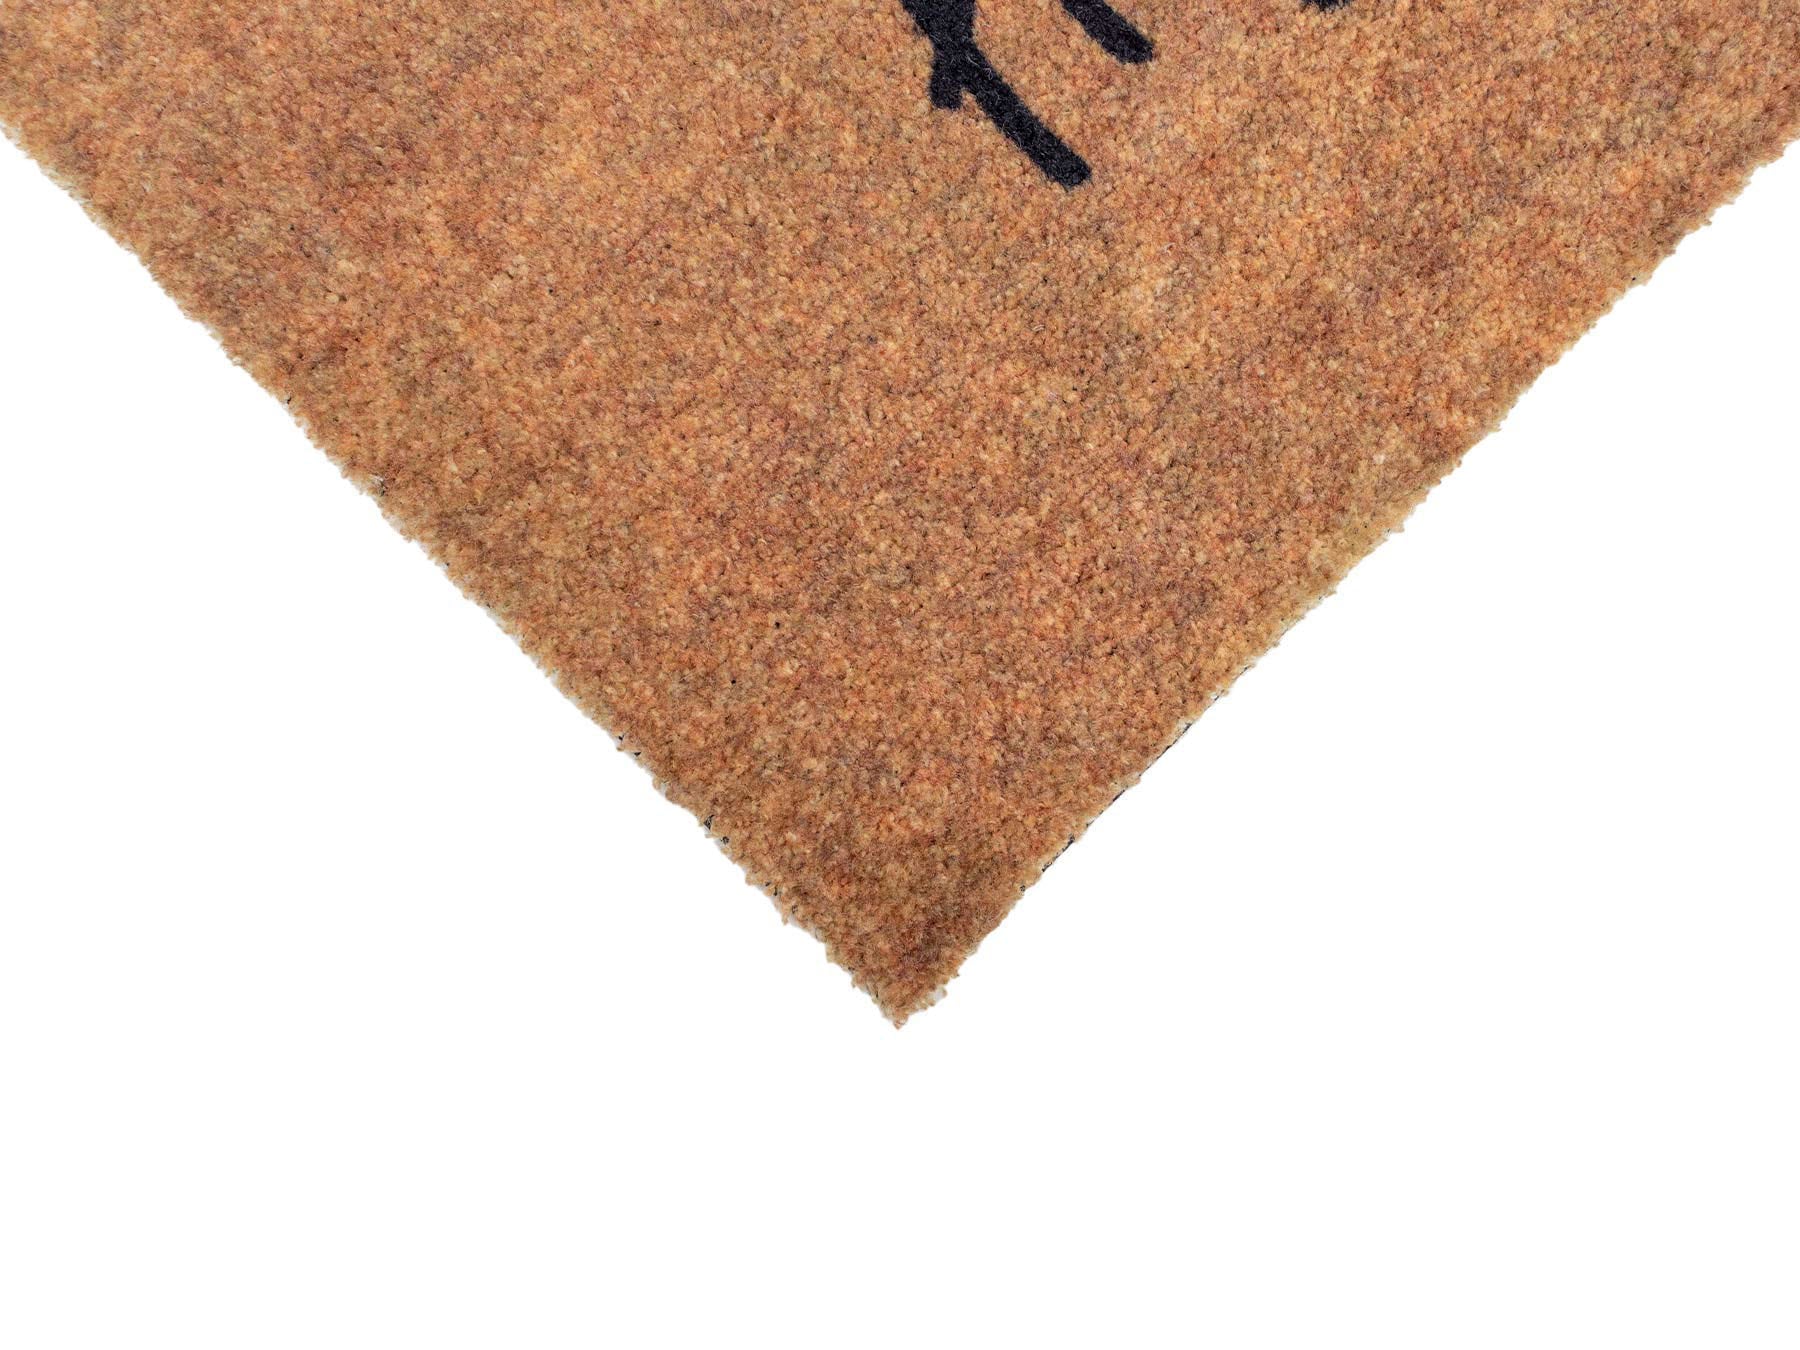  Primaflor Hochwertige Anti-Rutsch-Matte für Teppiche